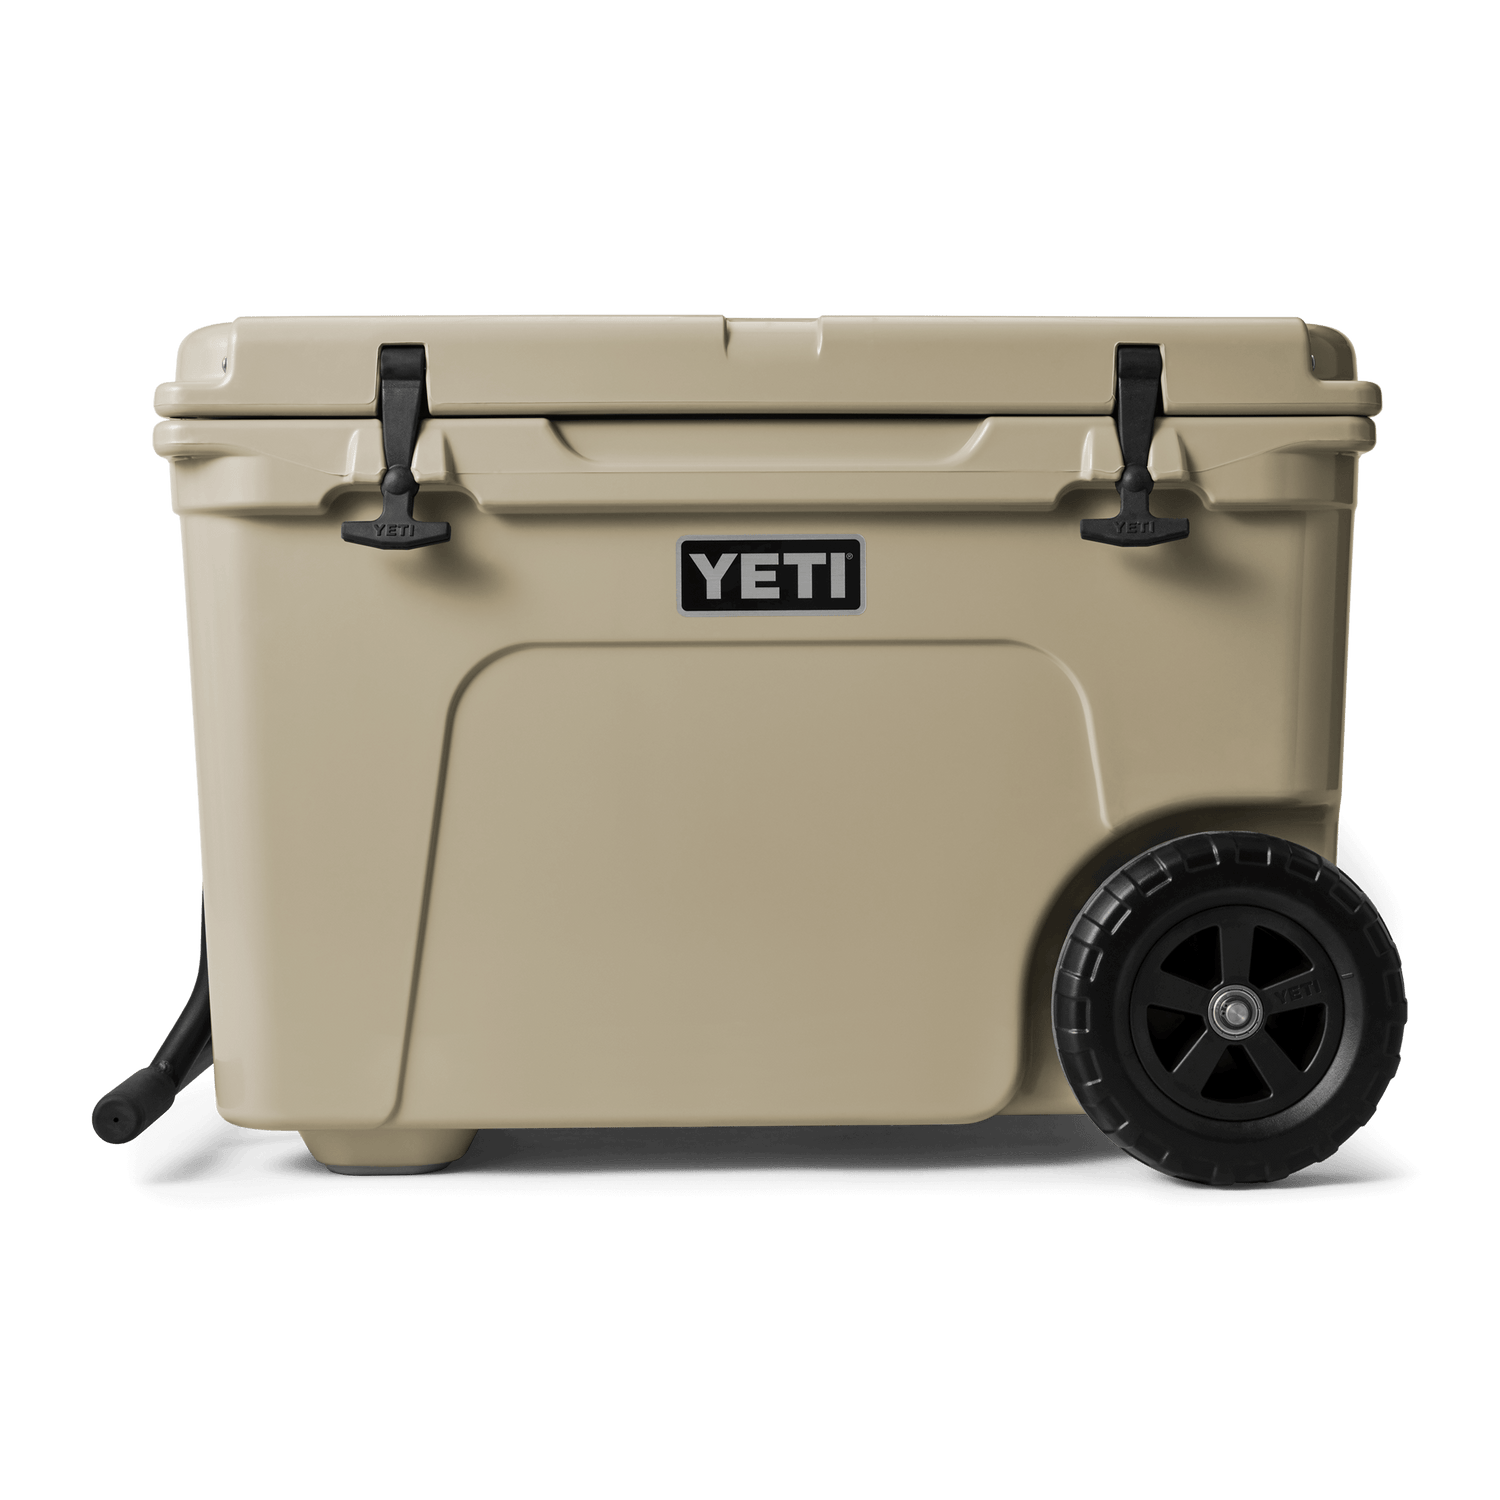 YETI Tundra Cool Boxes: Premium Ice Chests – YETI EUROPE